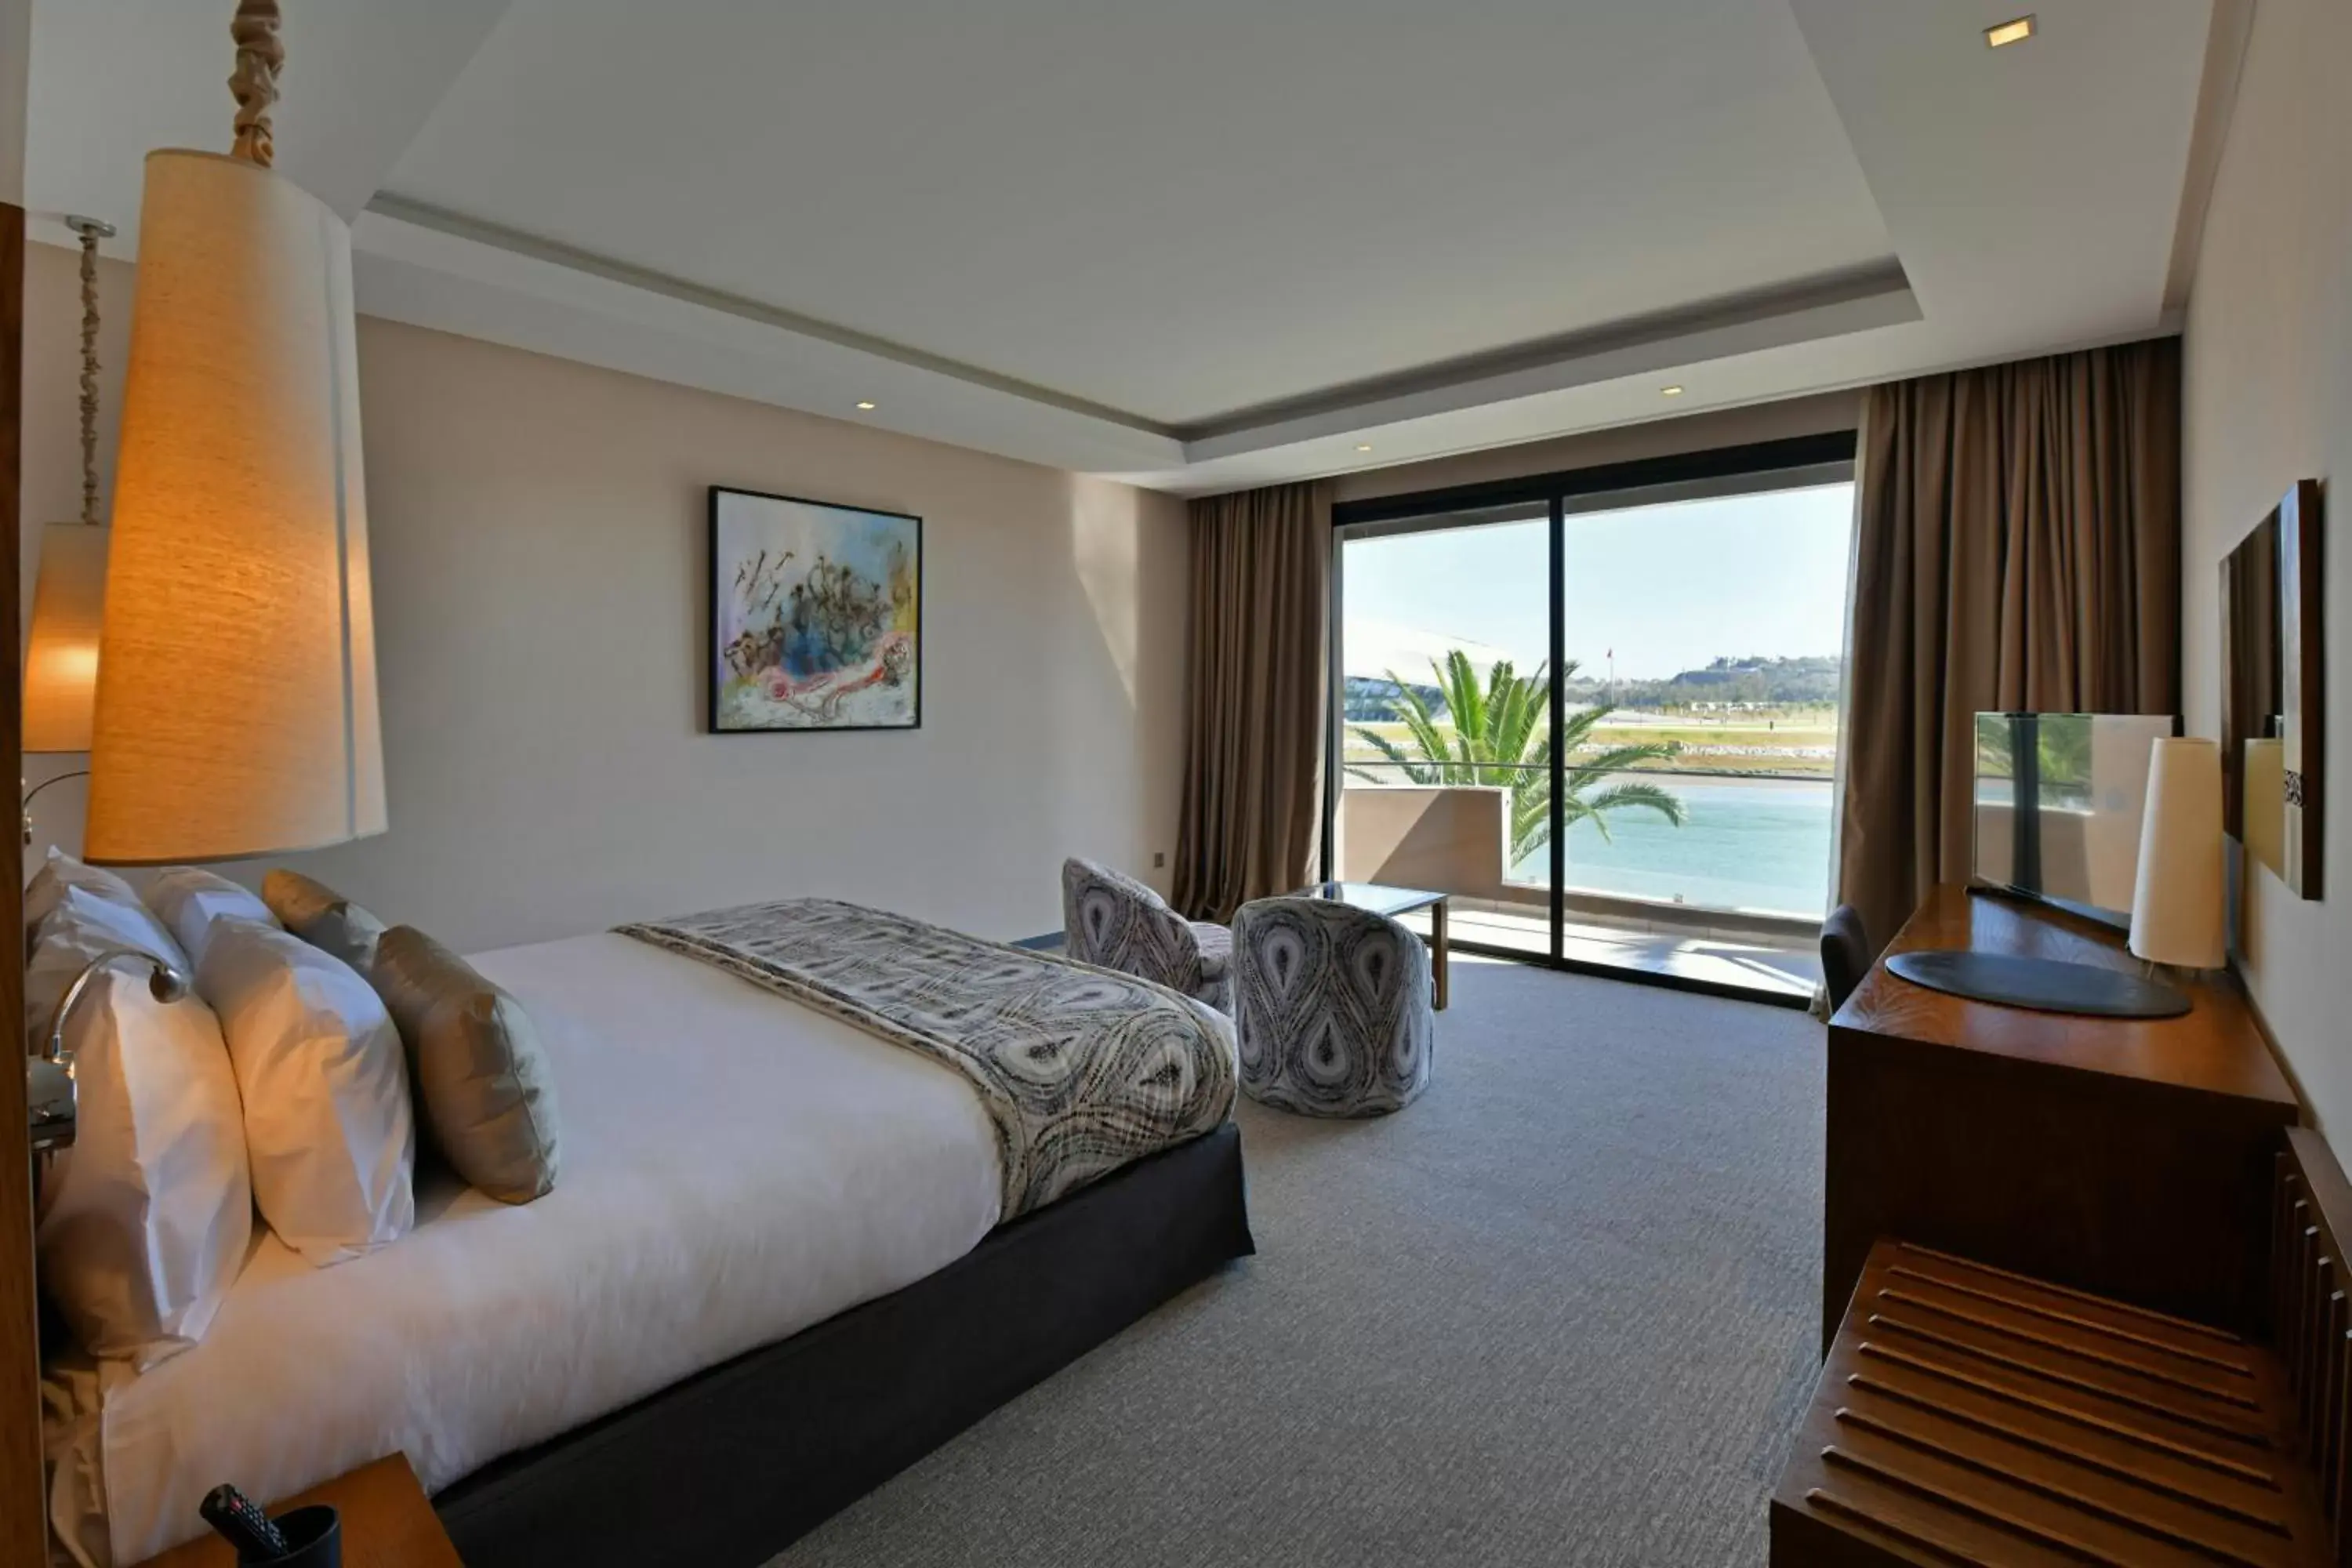 Premium Room with River View in Dawliz Rabat Art & Spa